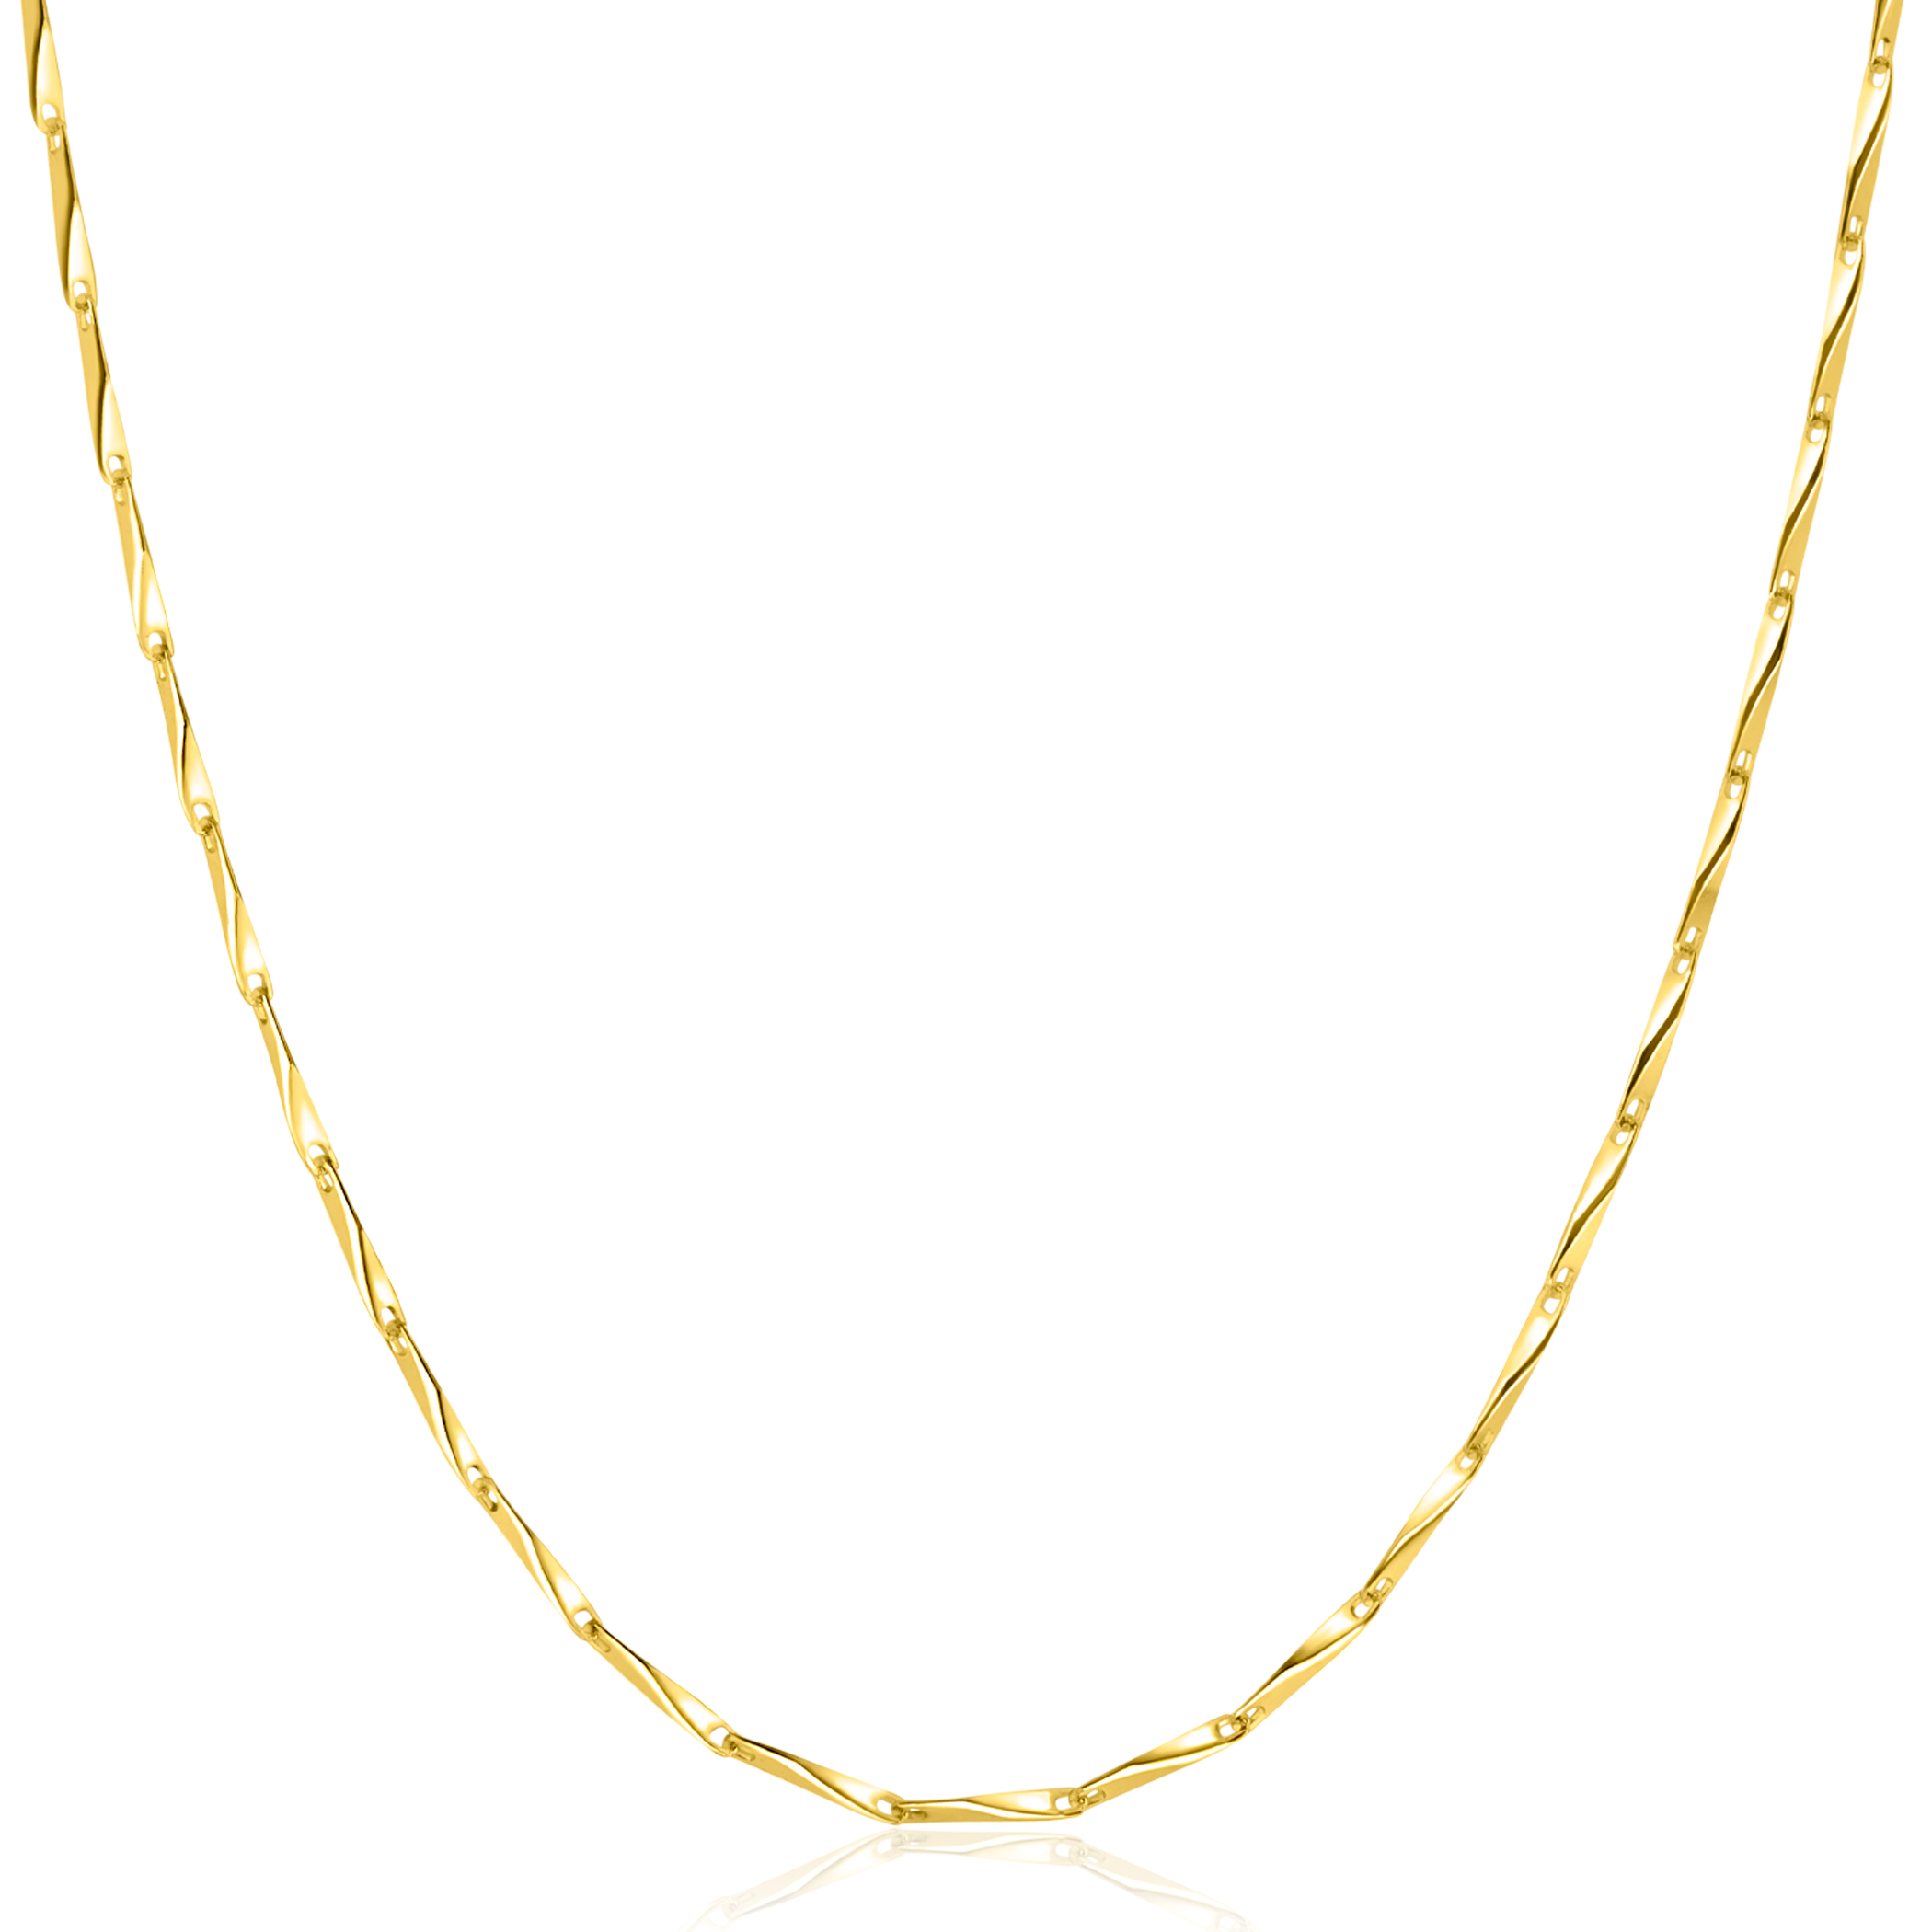 ZINZI gold plated zilveren schakel ketting met glinsterende pijlvormige schakels 1,5mm breed 42-45cm ZIC2414G